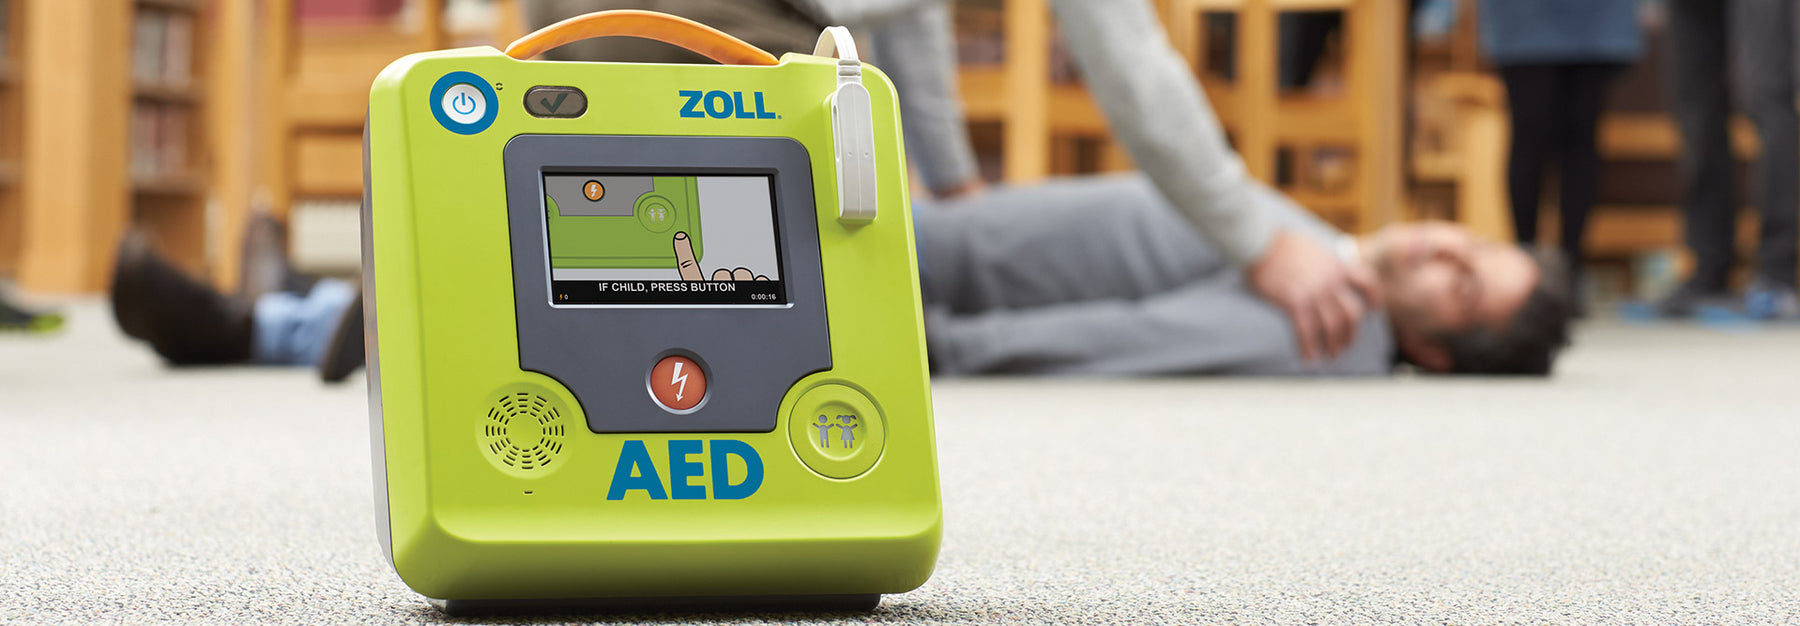 ZOLL AED 3 halbautomatischer Defibrillator einfach erklärt